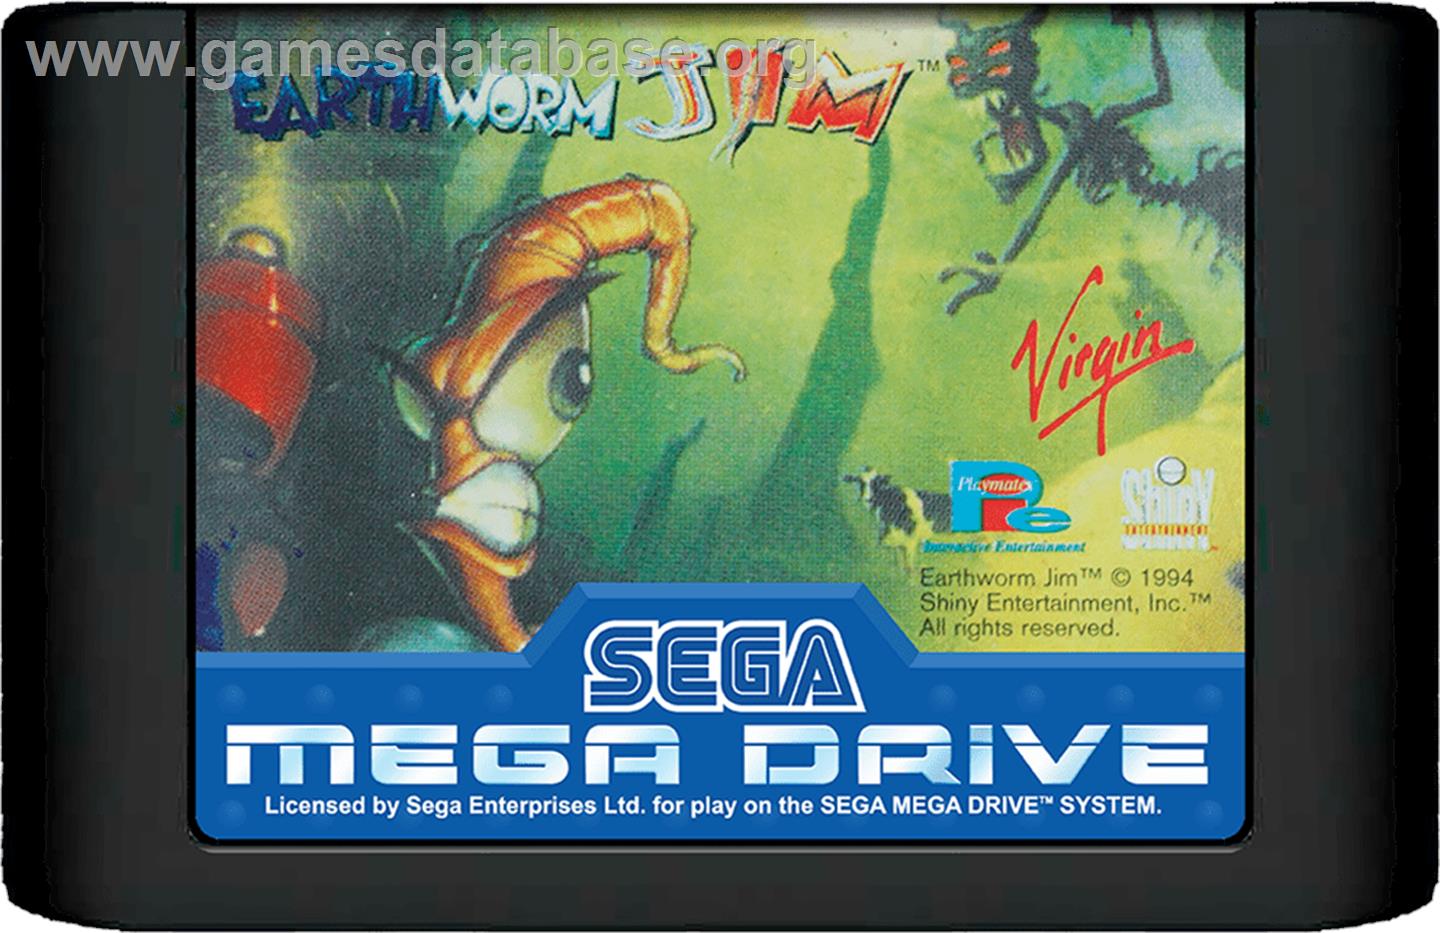 Earthworm Jim - Sega Genesis - Artwork - Cartridge